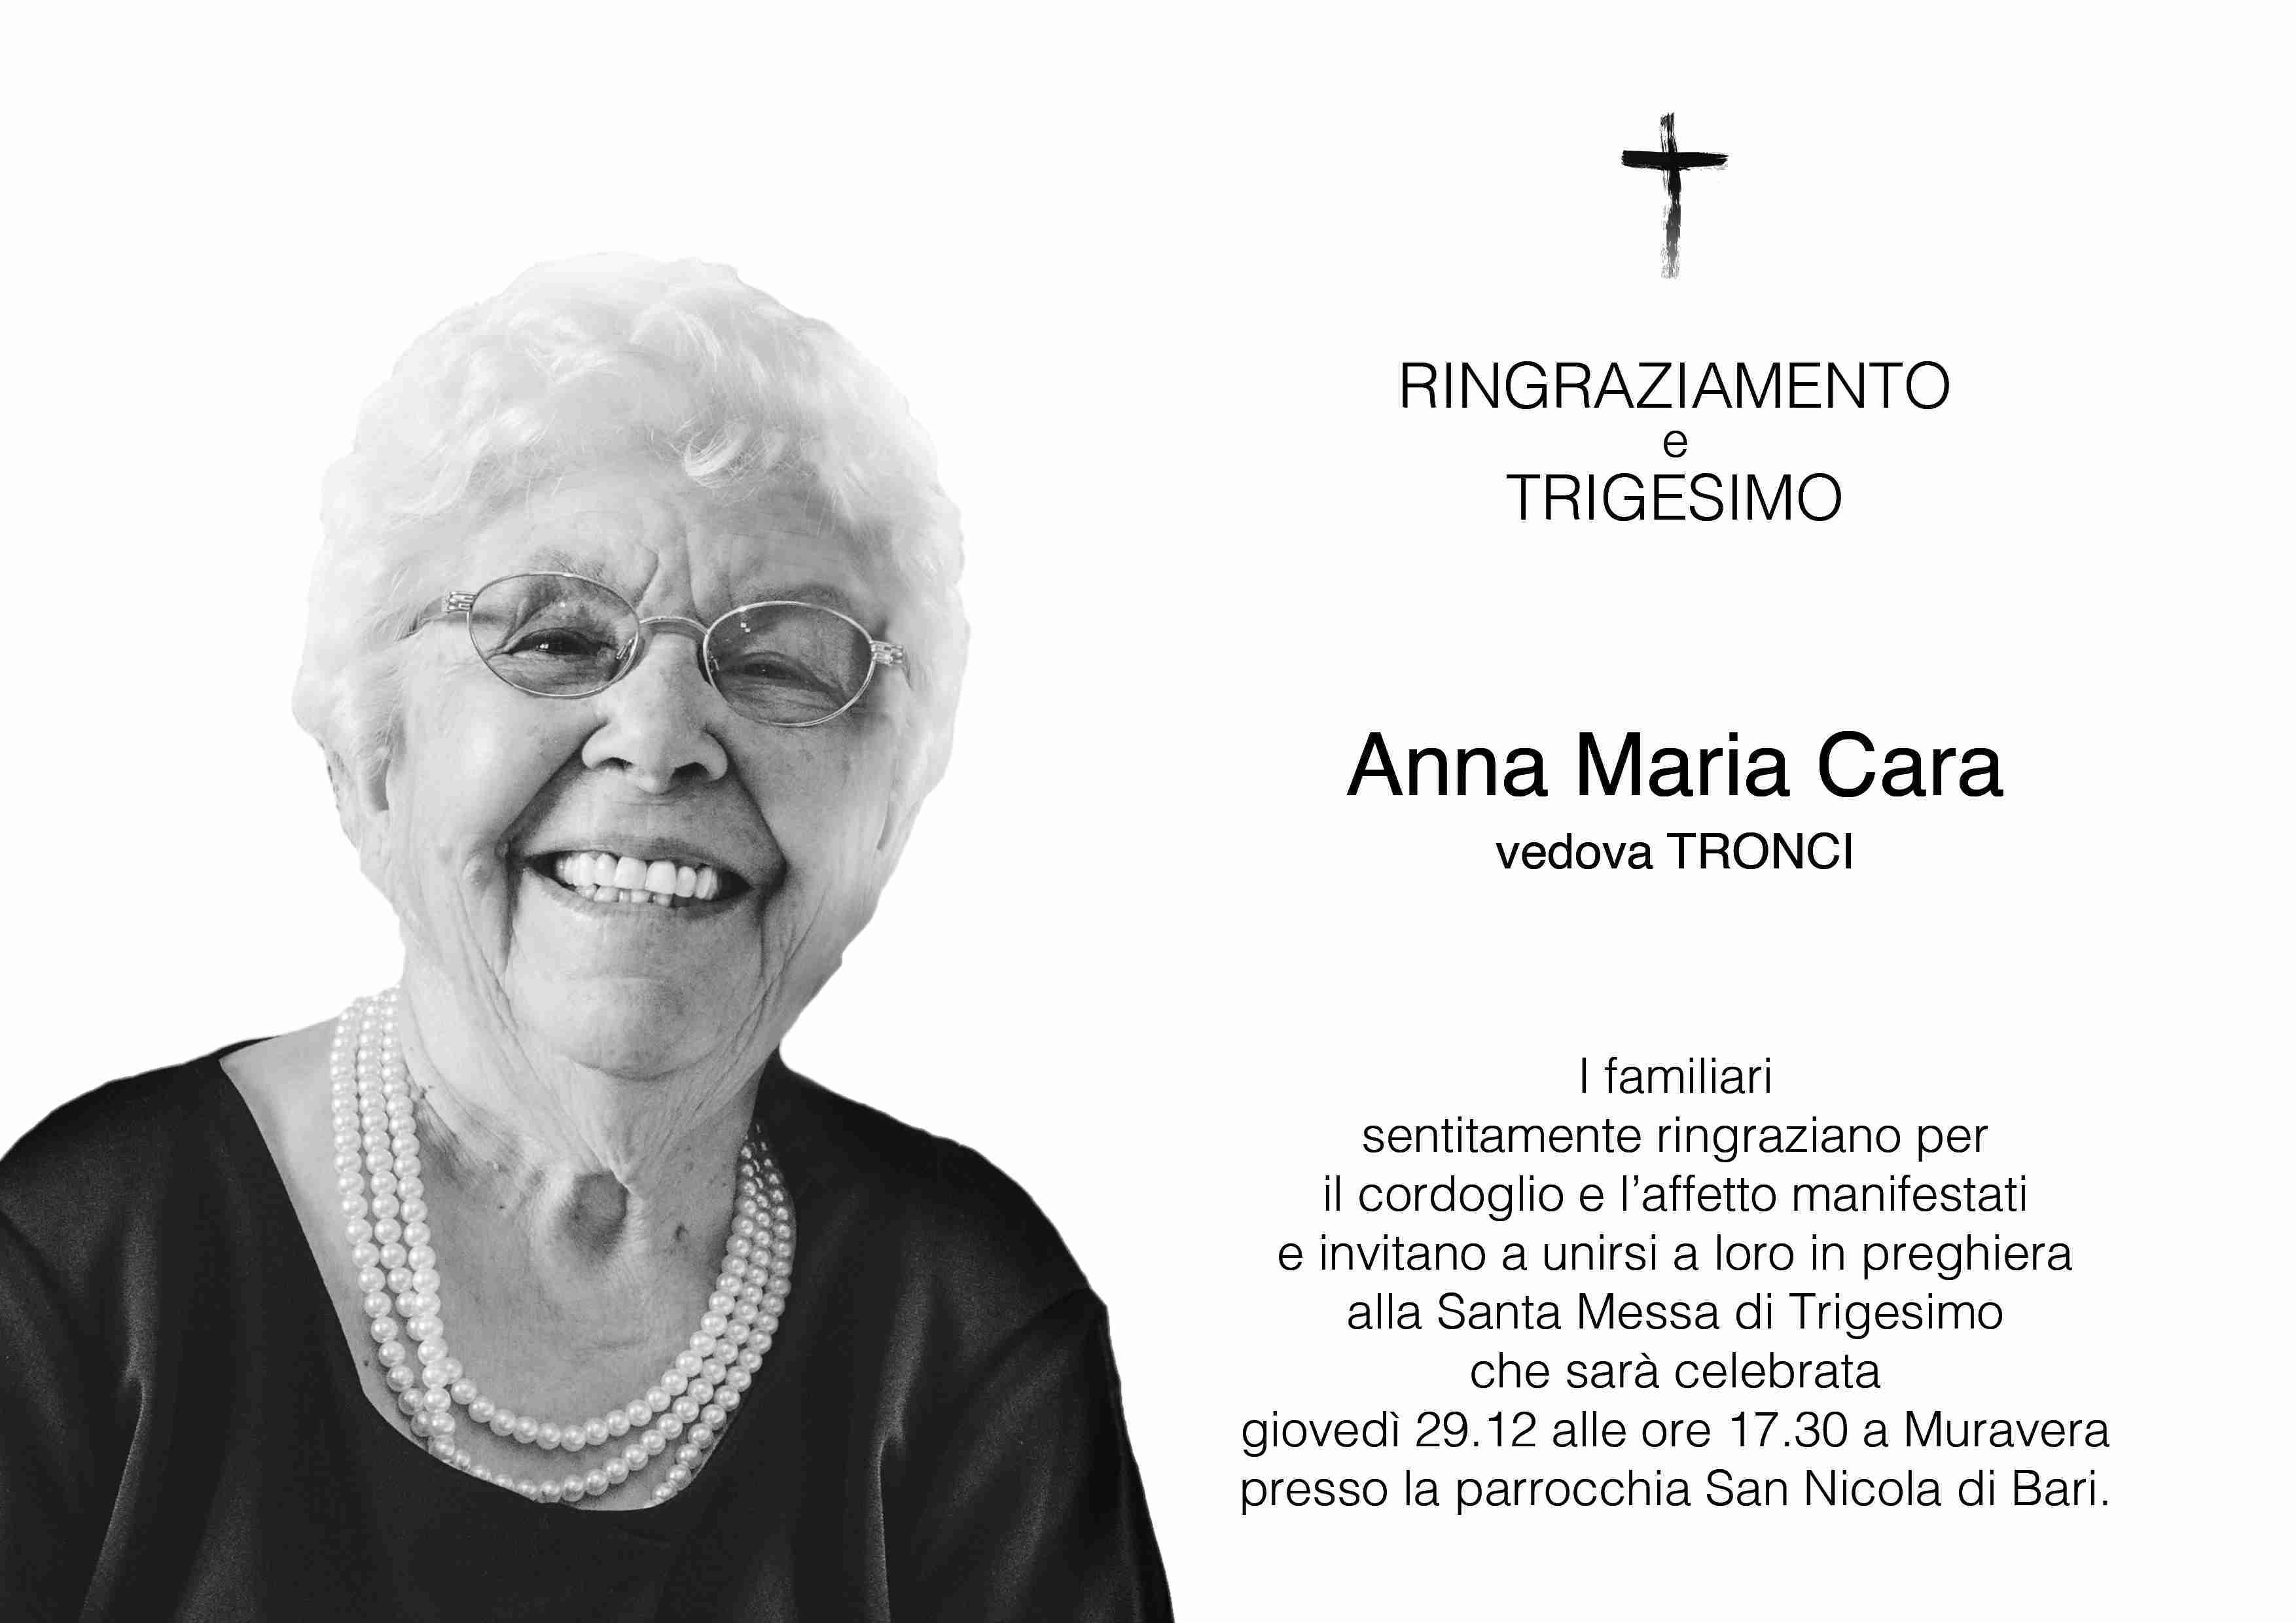 Anna Maria Cara